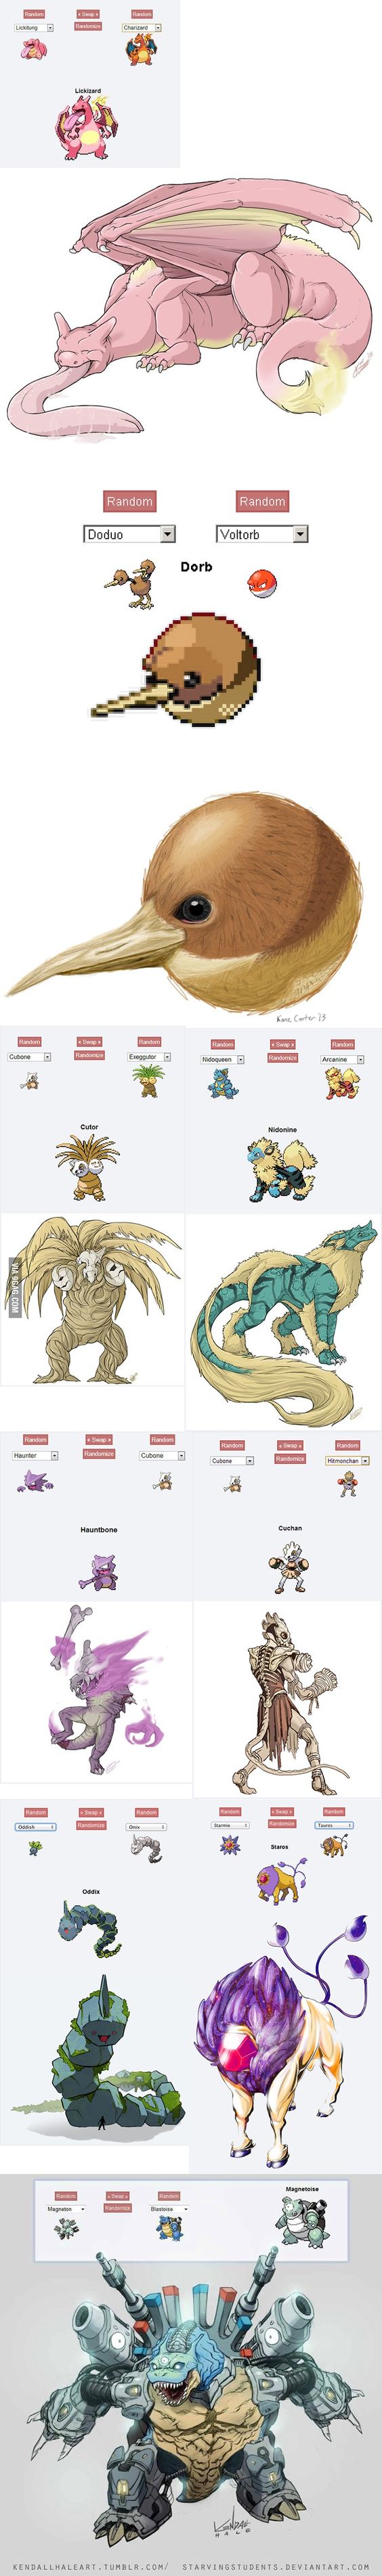 Pokemon Fusion Art (x-post to r/pokemon)